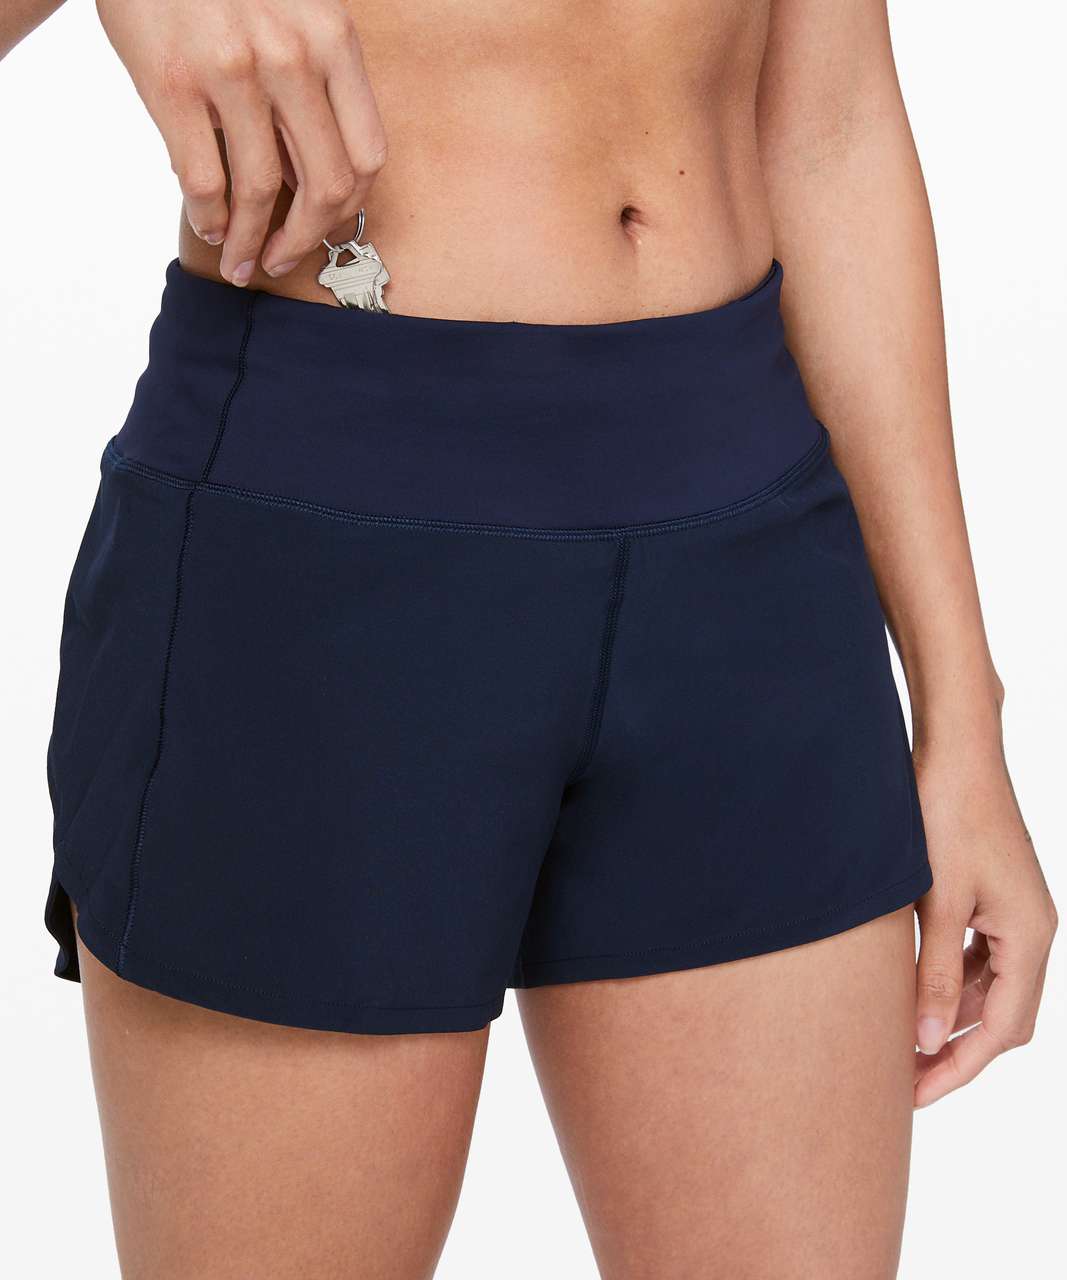 Navy blue Lululemon Shorts - Size 4 / Women's size 8 - Shorts